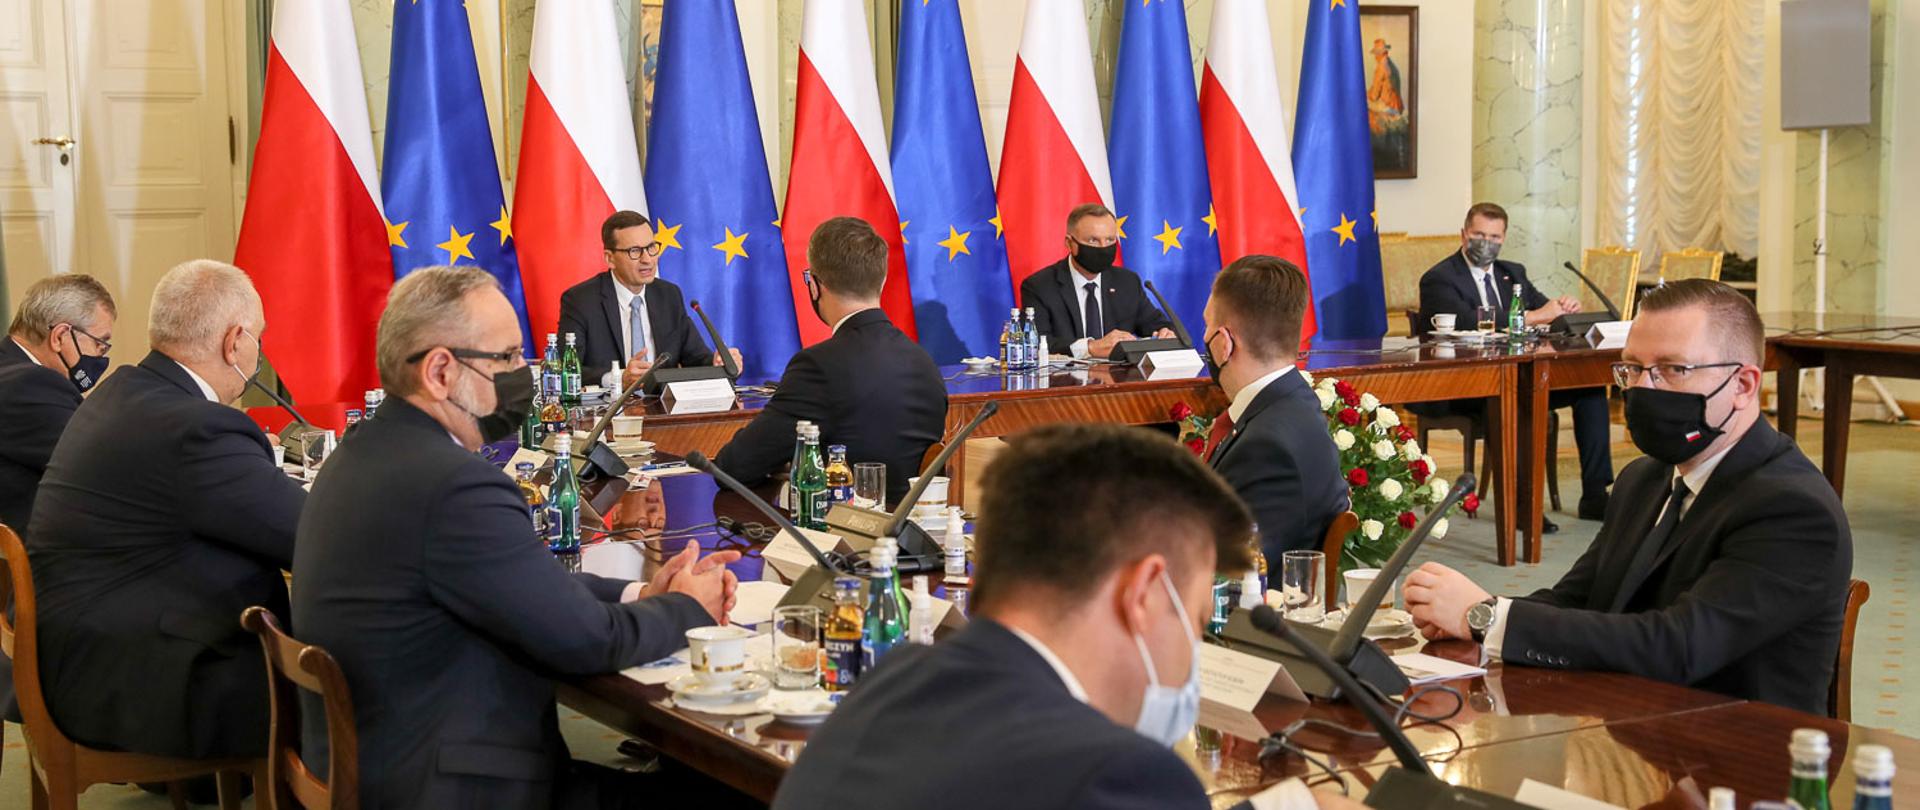 na zdjęciu widoczni uczestnicy rady gabinetowej, Prezydent Andrzej Duda, Premier Mateusz Morawiecki na tle flag biało czerwonych oraz europejskich